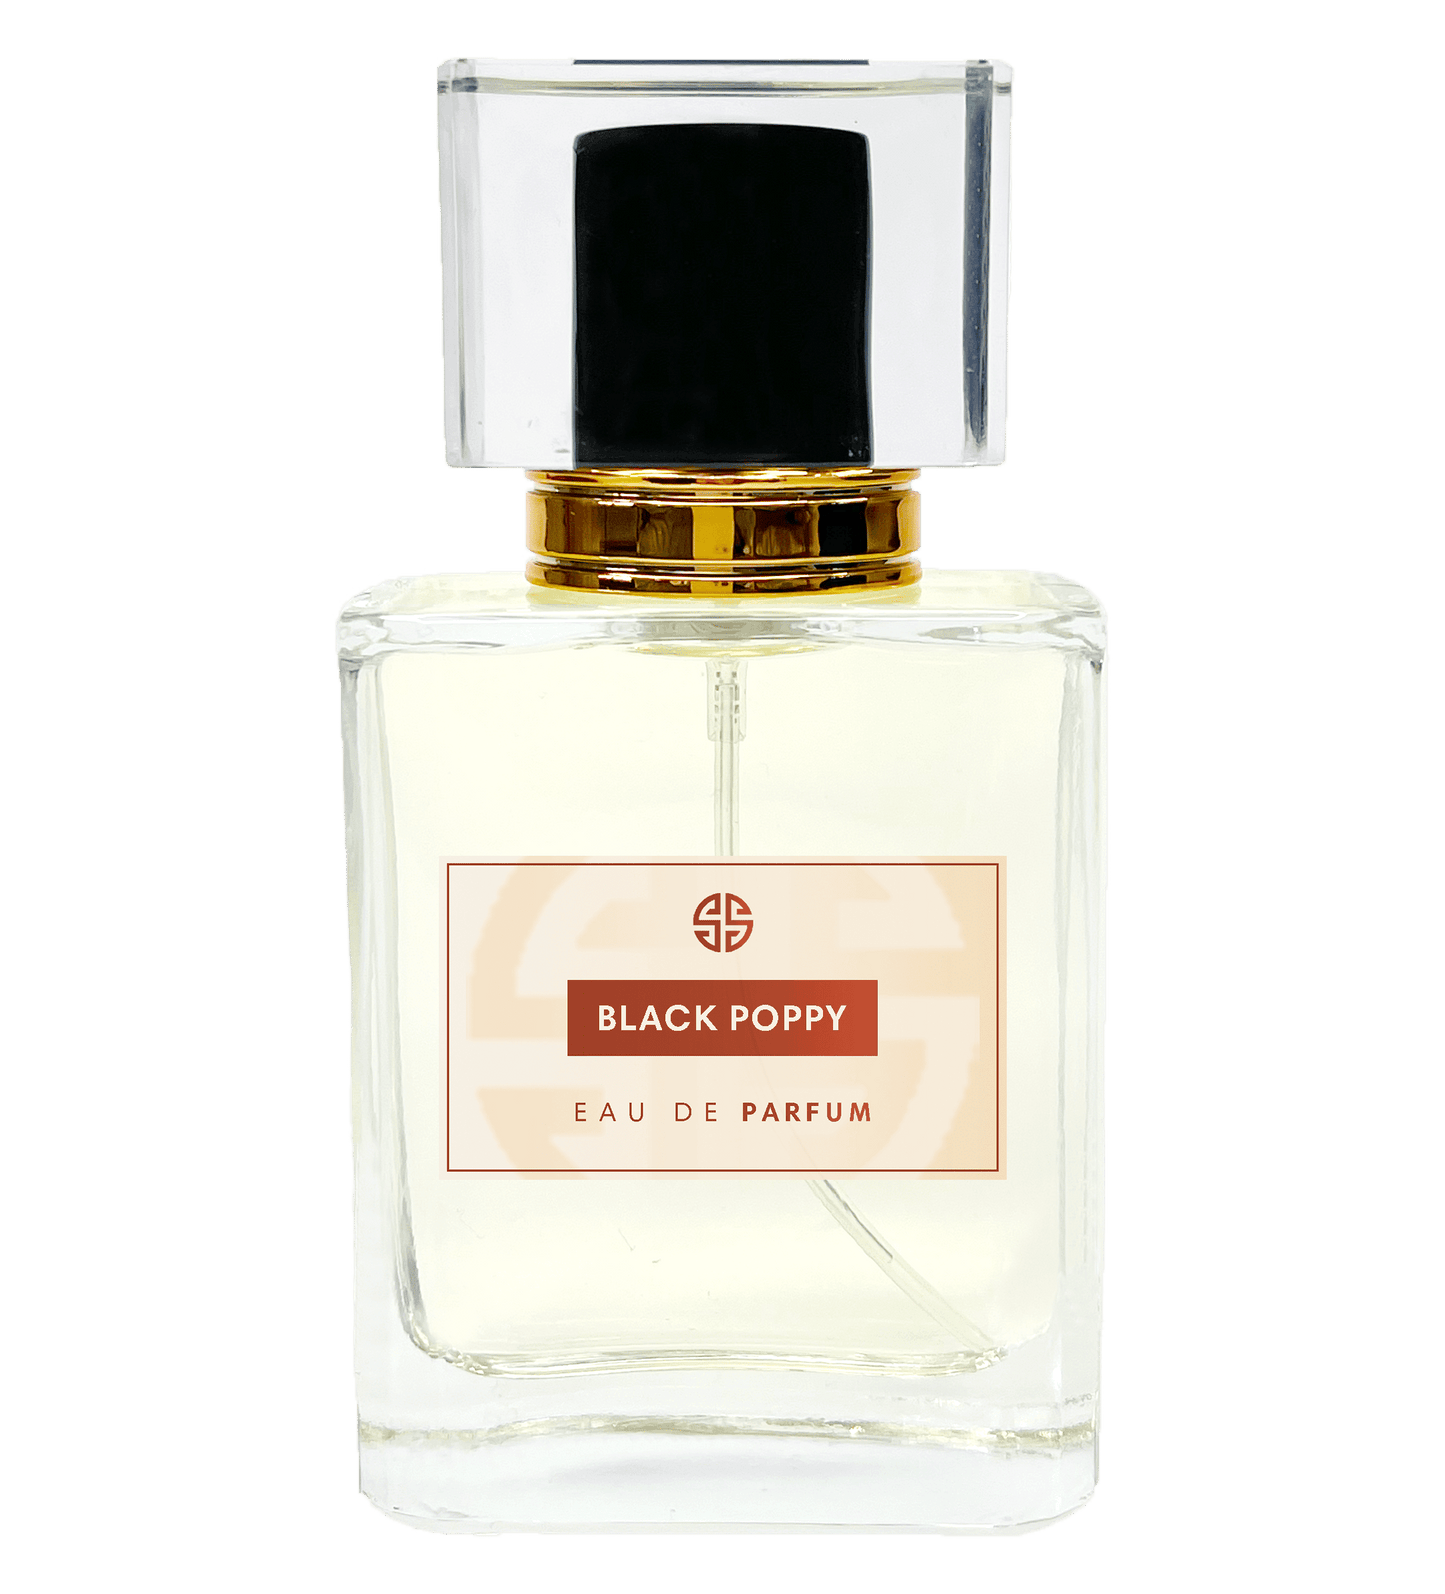 Black Opium parfum - Similar Scent BLACK POPPY - undefined